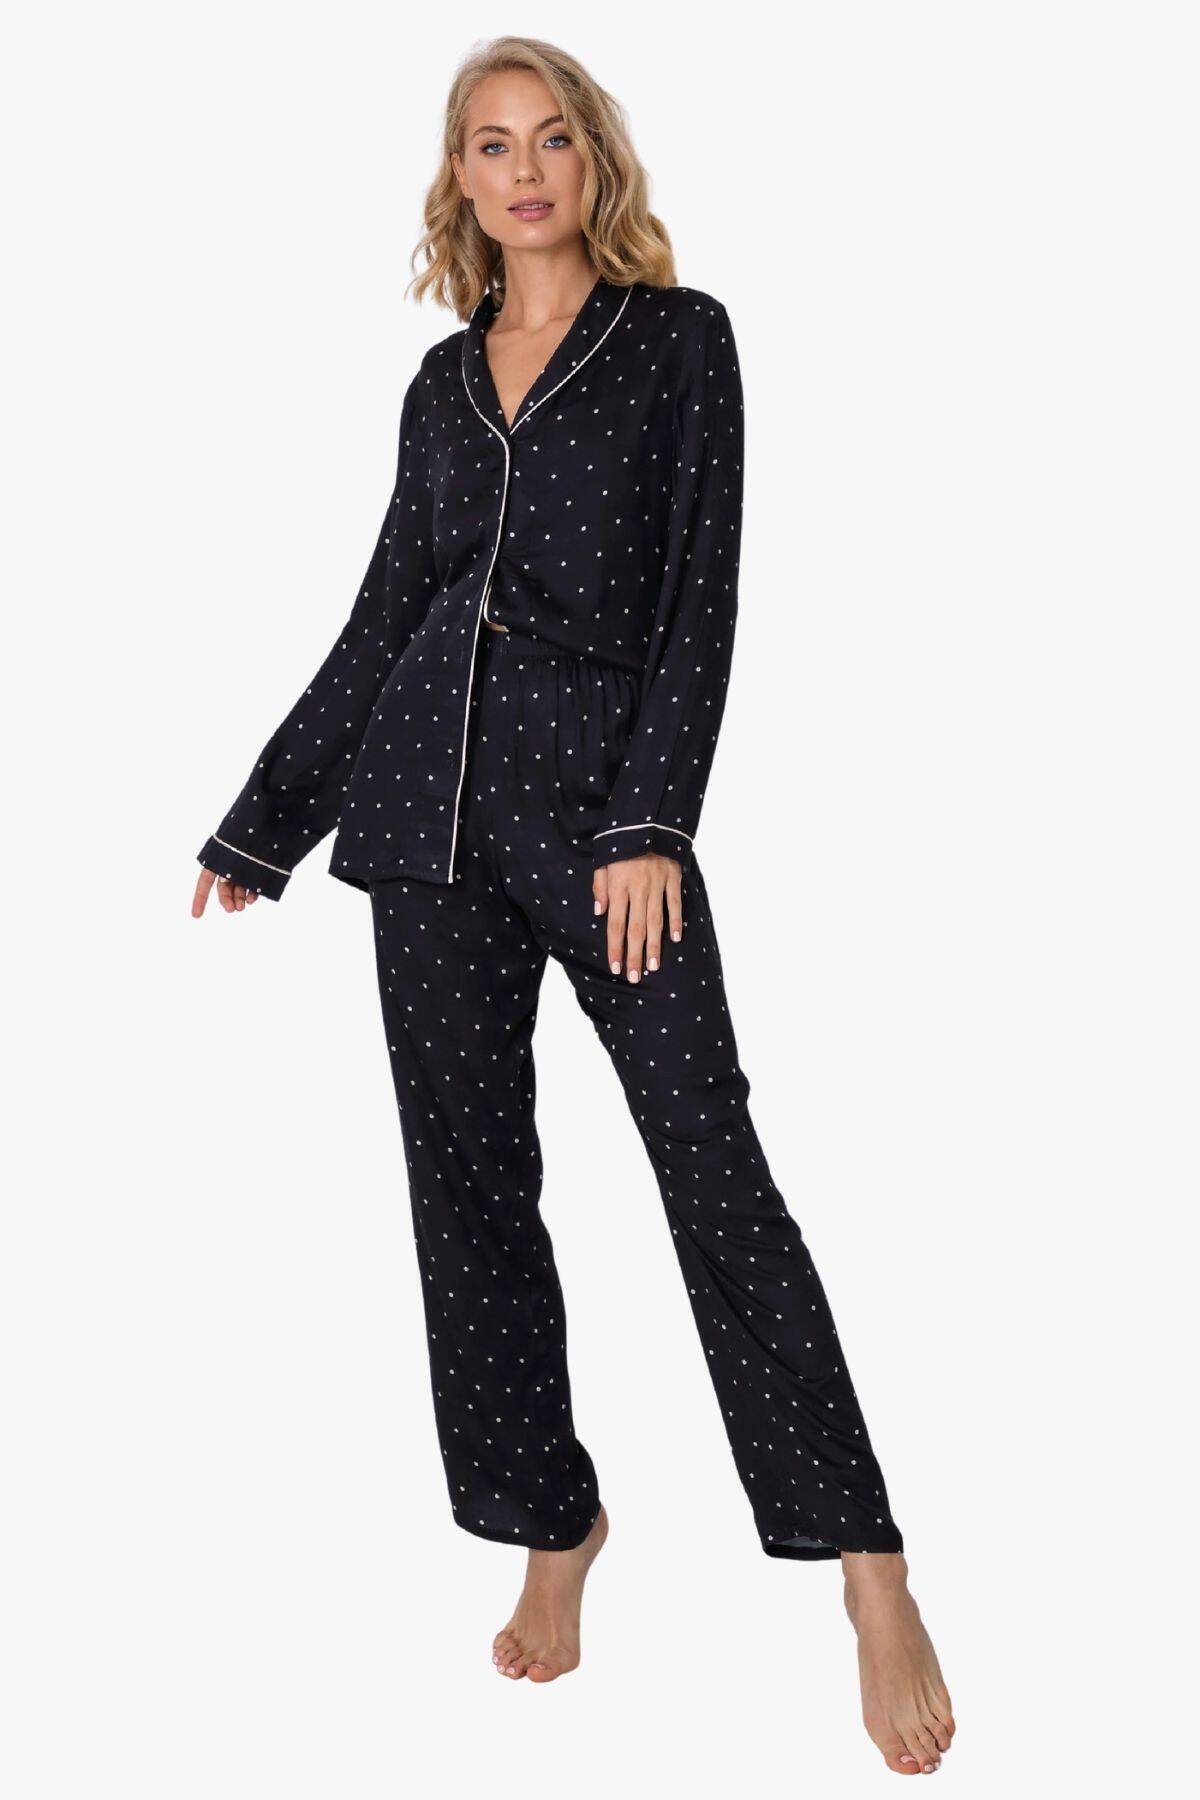 Пижама женская с брюками ARUELLE Anne pajama long black, черный в горошек вид 0